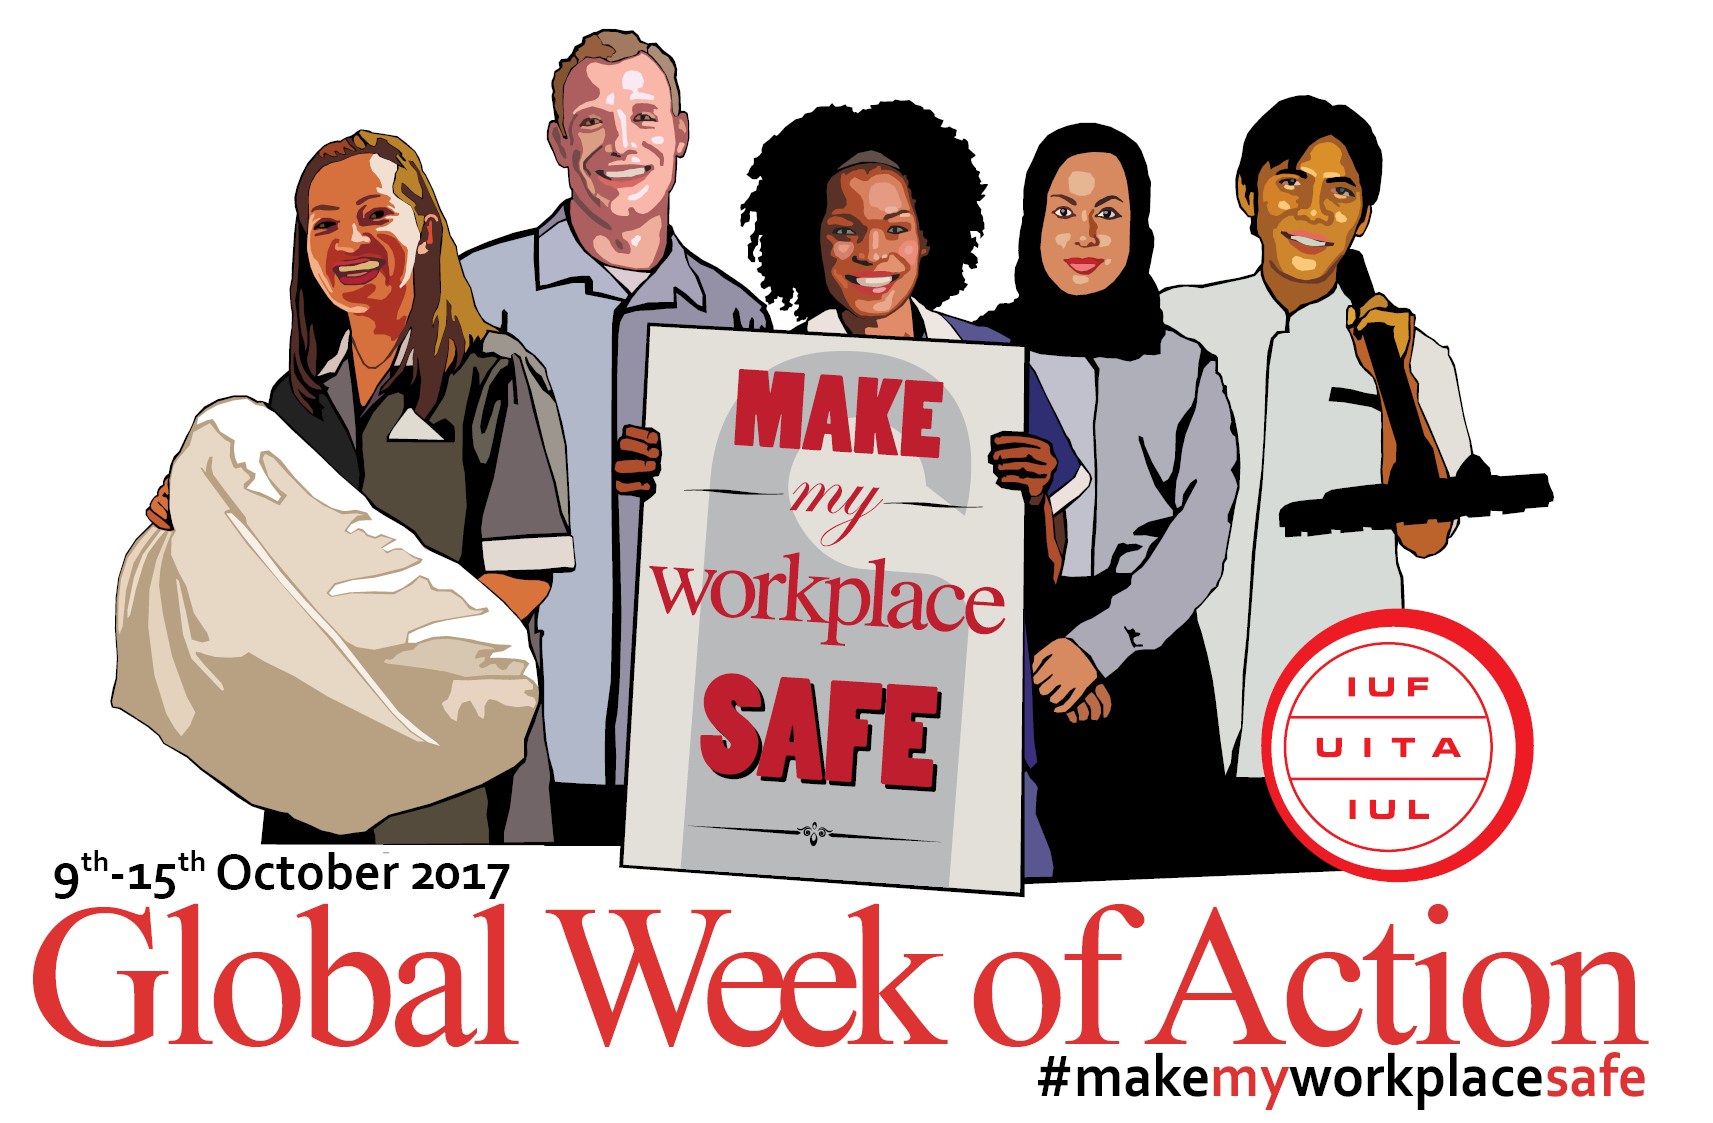 Global-Week-of-Action-9-15October2017-EN